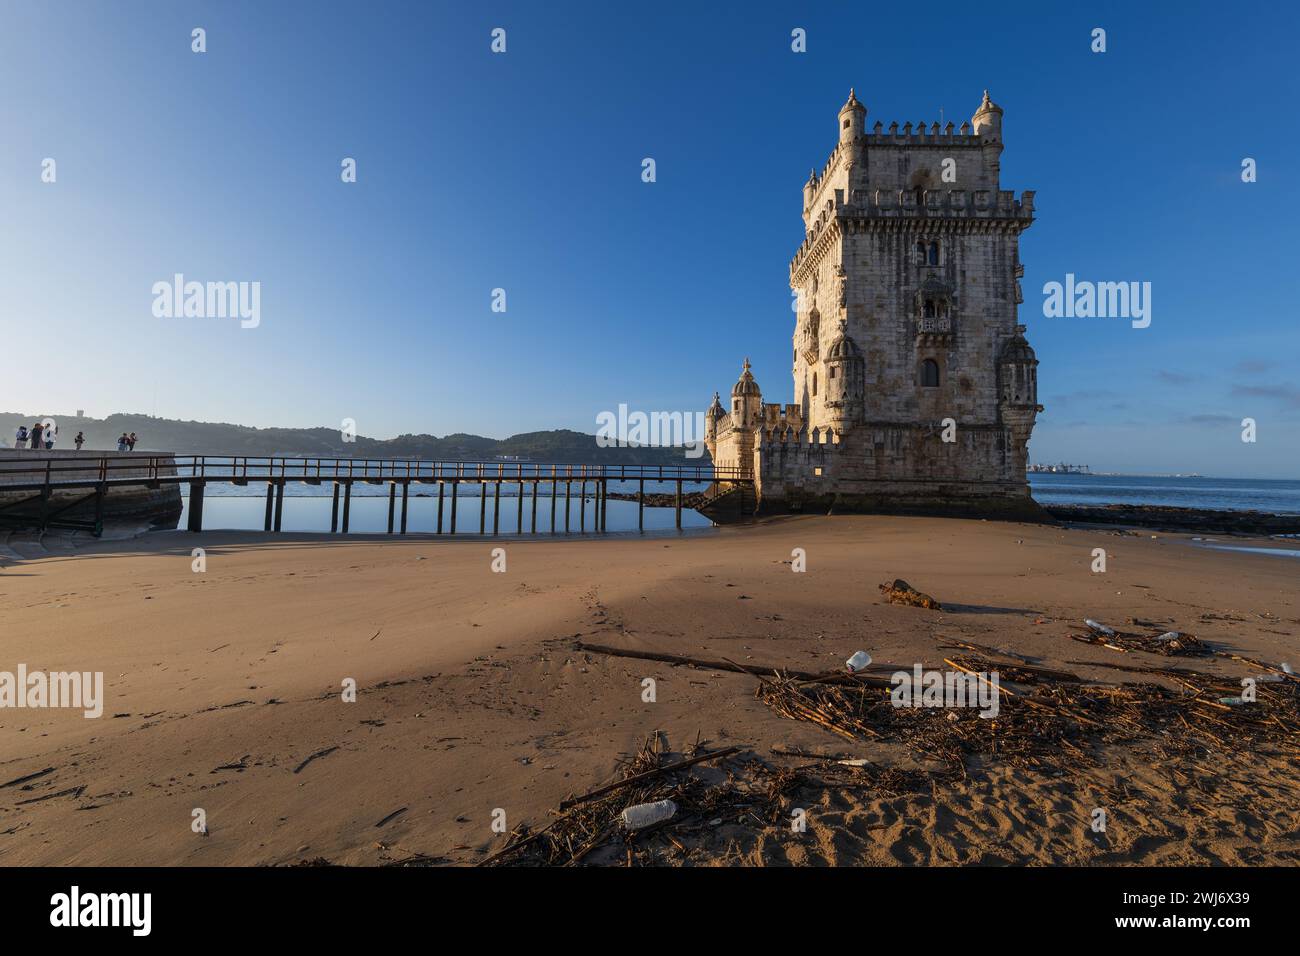 Der Torre de Belem in Lissabon, Portugal. Befestigungsanlage aus dem 16. Jahrhundert vom Sandufer der Flussmündung des Tejo. Stockfoto